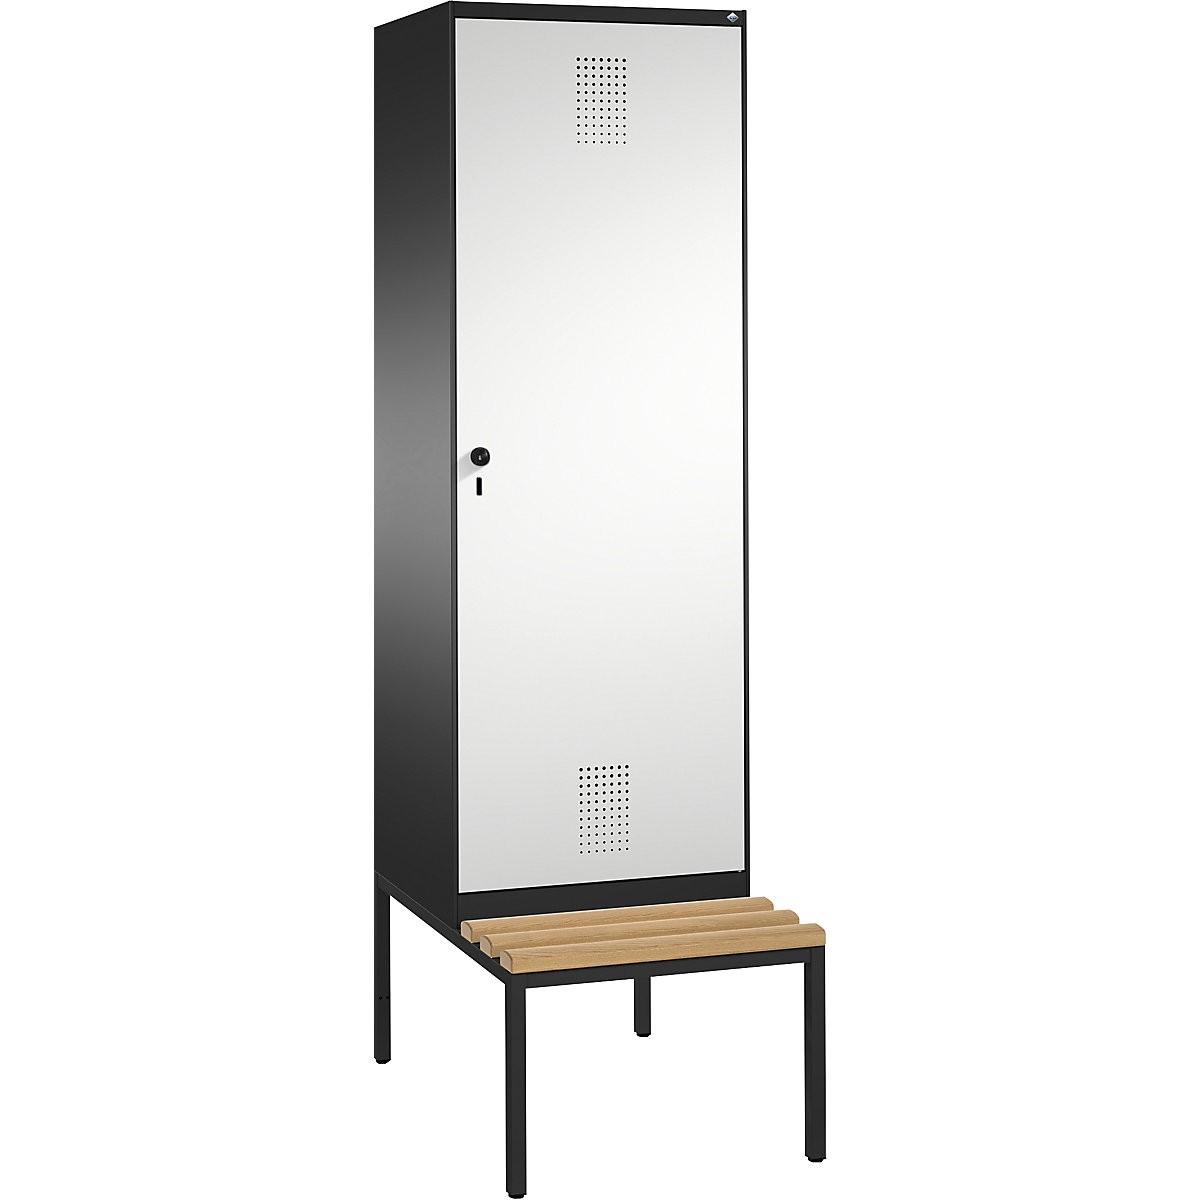 EVOLO cloakroom locker, with bench, door for 2 compartments – C+P, 2 compartments, 1 door, compartment width 300 mm, black grey / light grey-11